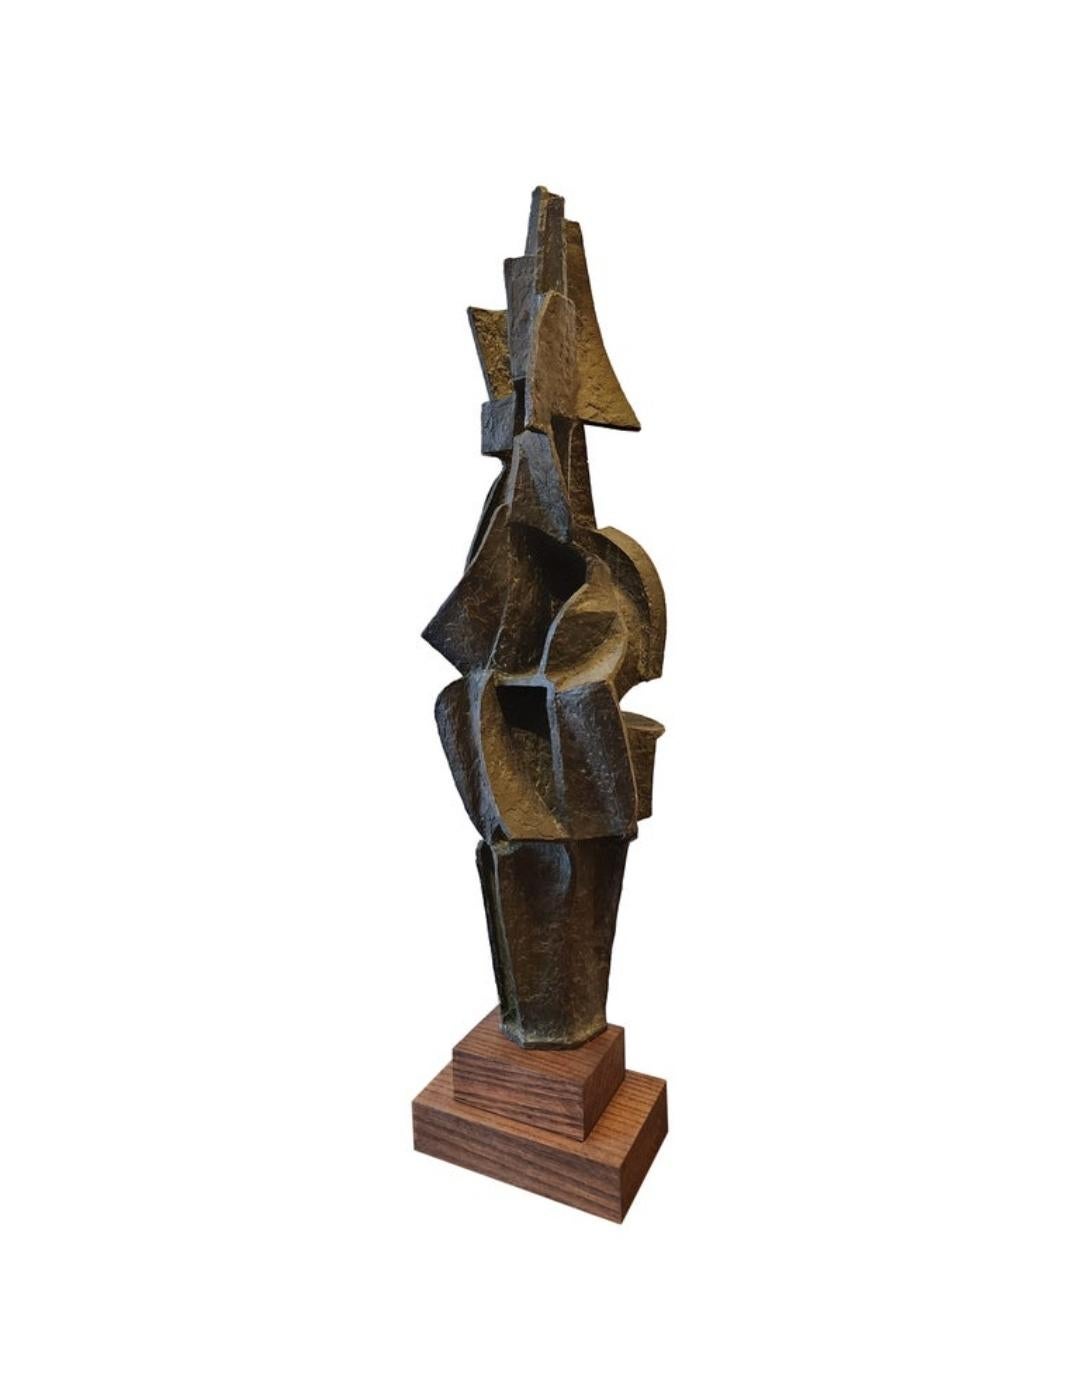 Une magnifique sculpture en bronze, rarement vue, de l'artiste américain Gerald DiGiusto. Créé alors qu'il travaillait en Italie dans les années 1950. 
Gerald DiGiusto est né le 30 juin 1929 à New York, fils d'immigrés italiens et juifs. Il a